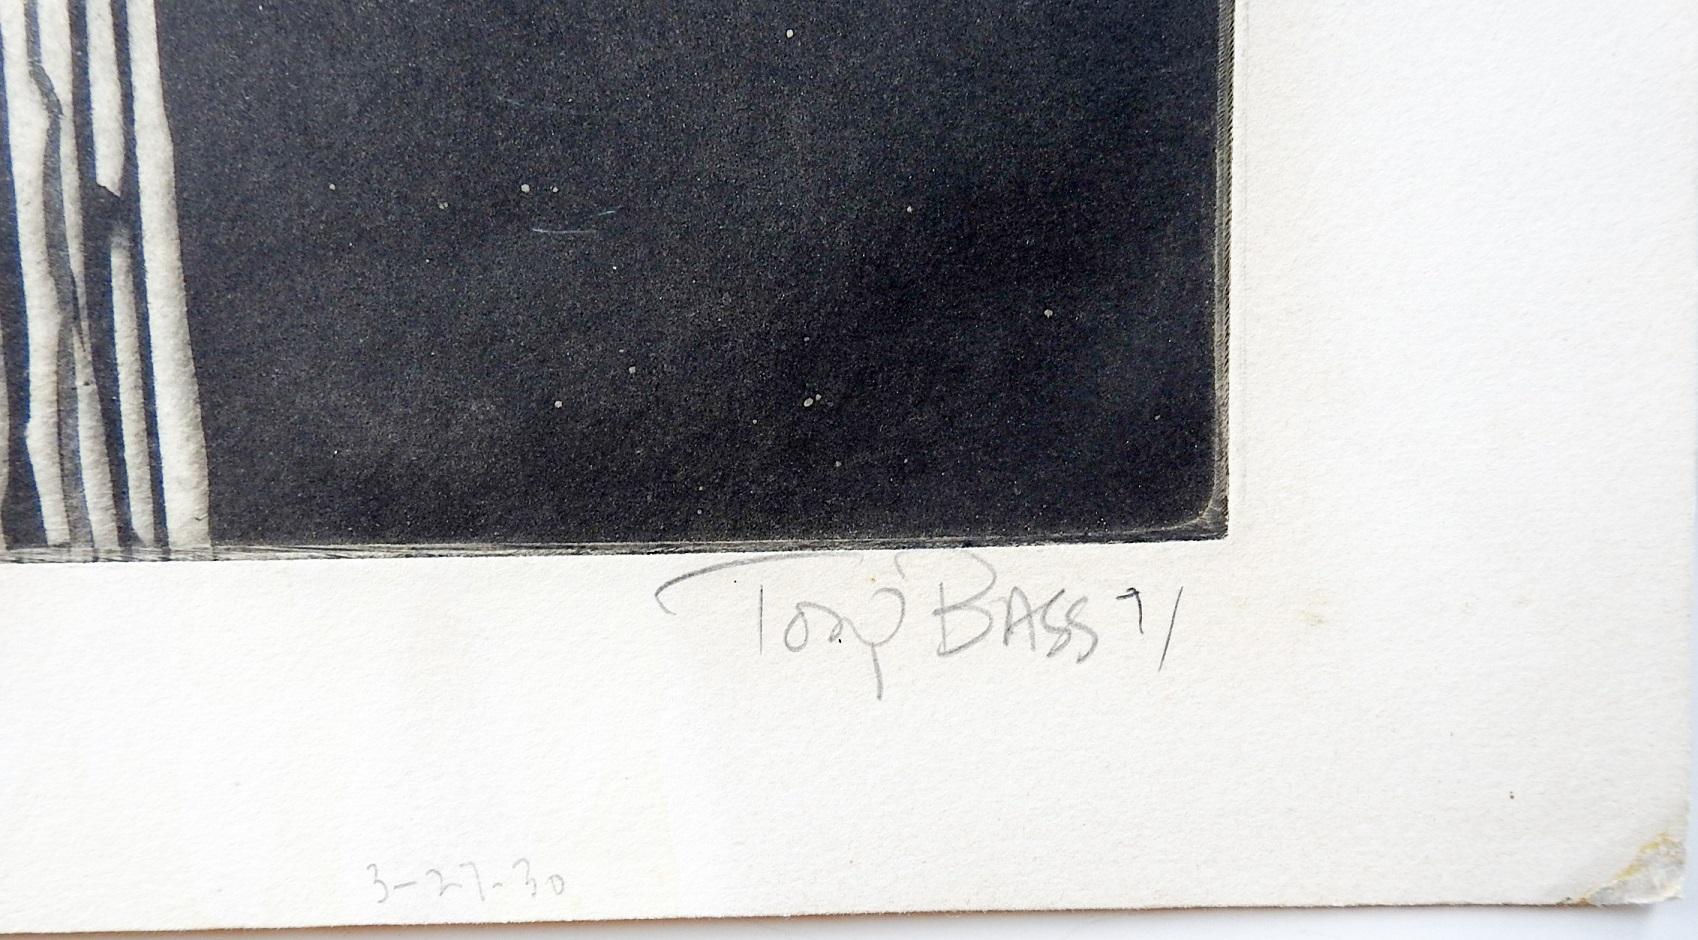 CIRCA 1970's abstrakte Farbporträt-Radierung auf Papier von Tony Bass (geb. 1943) Texas. Signiert, betitelt Maureen und nummeriert 3/30 in Bleistift am unteren Rand. Ungerahmt, Alterstönung.